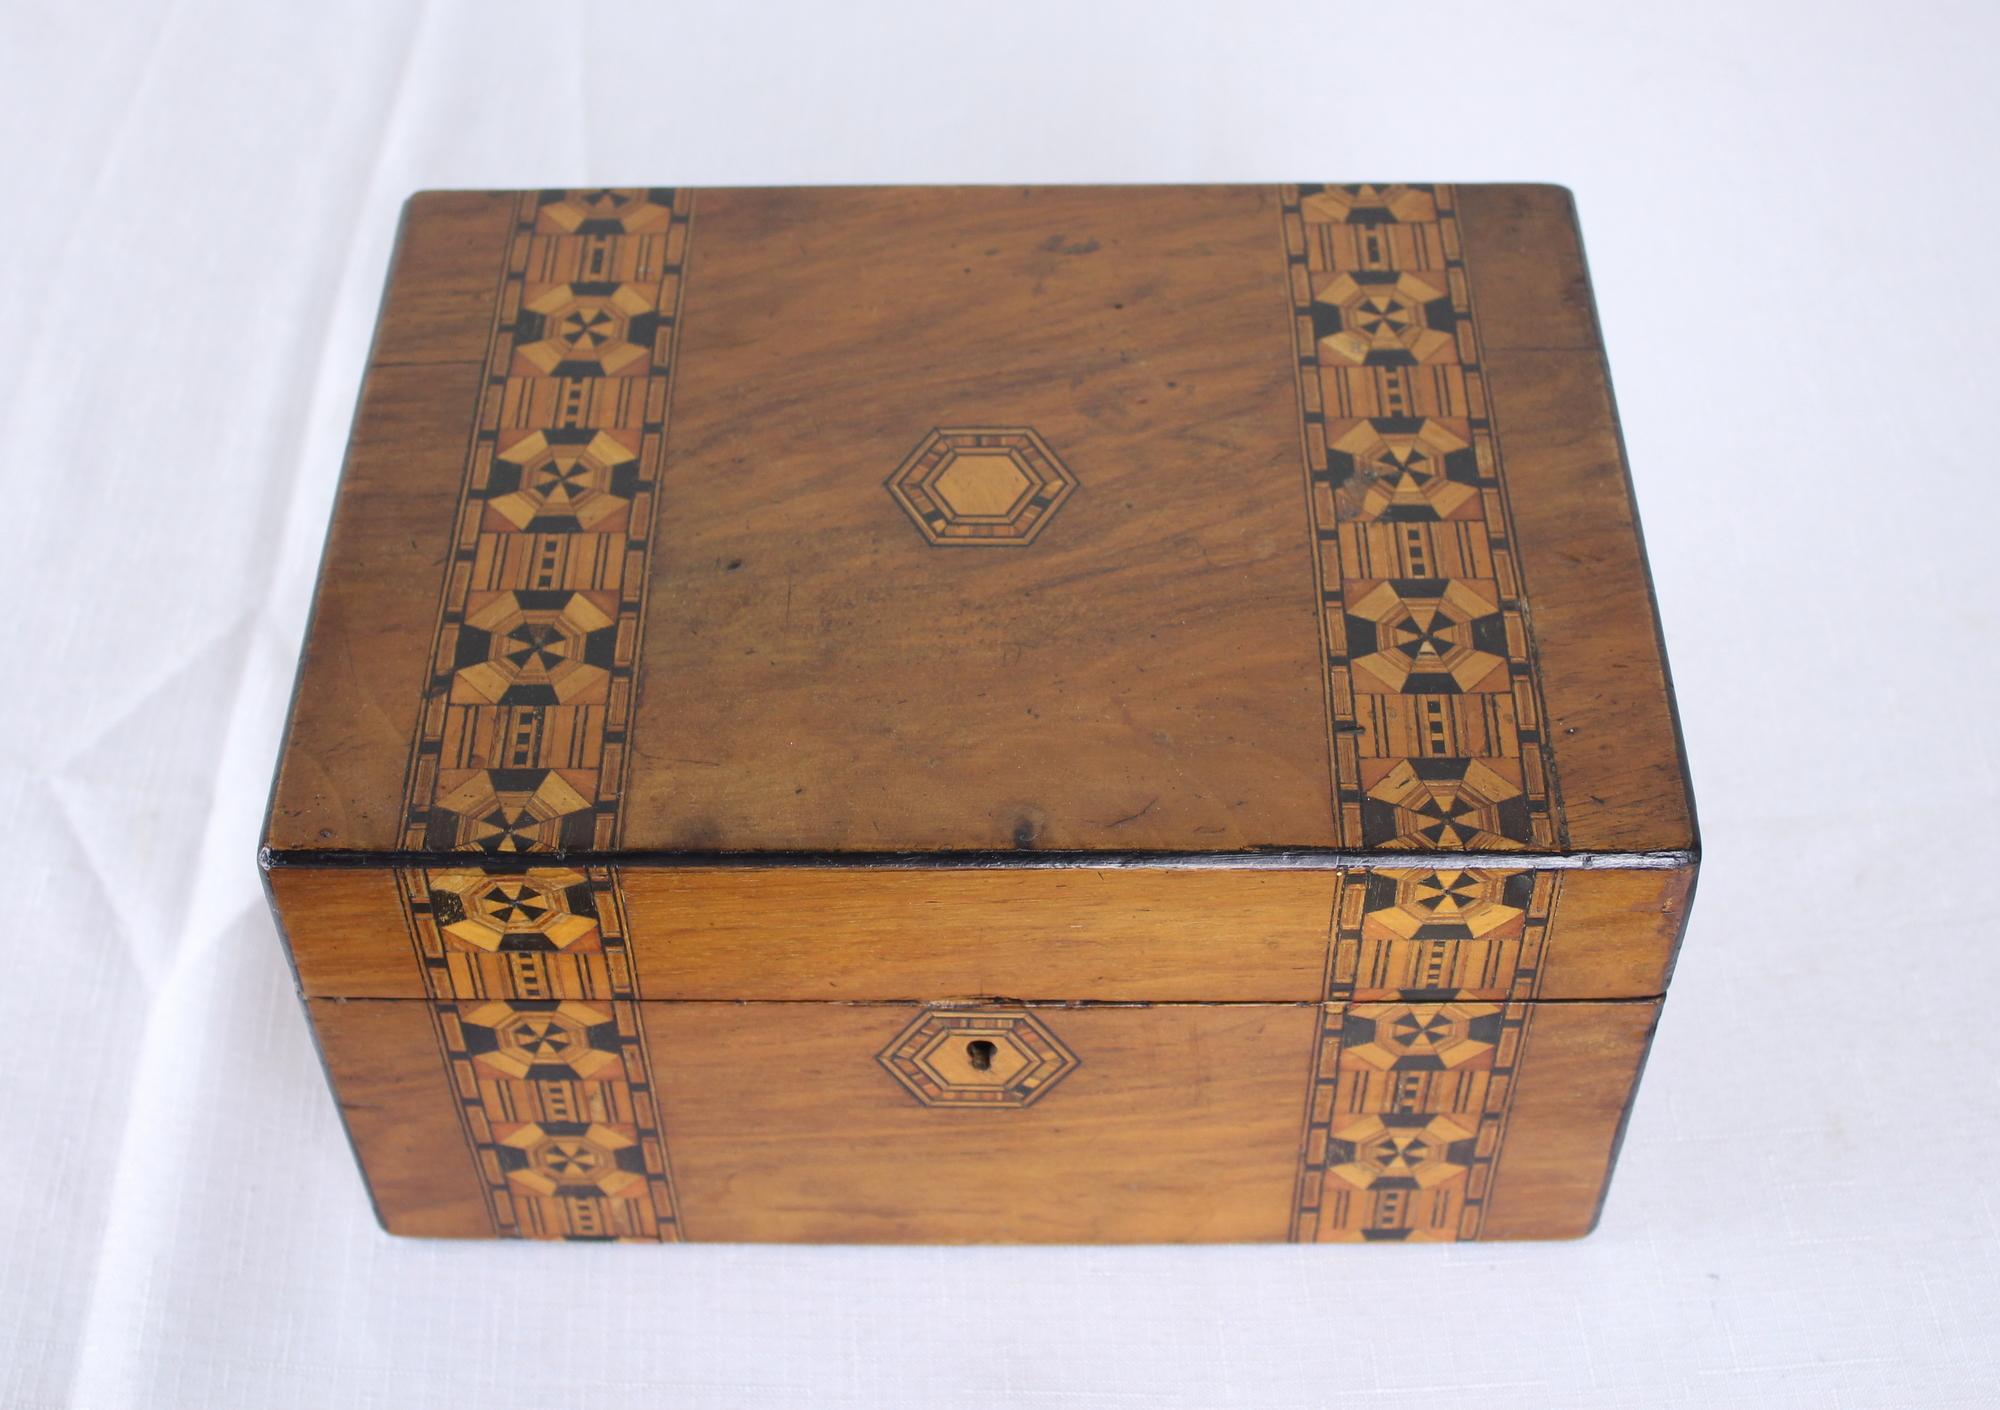 Eine dekorative Tumbridgeware-Box aus Nussbaumholz. Tumbridgeware ist eine Form von dekorativen Holzeinlegearbeiten, typischerweise in Form von Kästchen, die für Tonbridge und die Kurstadt Royal Tunbridge Wells in Kent im 18. und 19. Jahrhundert